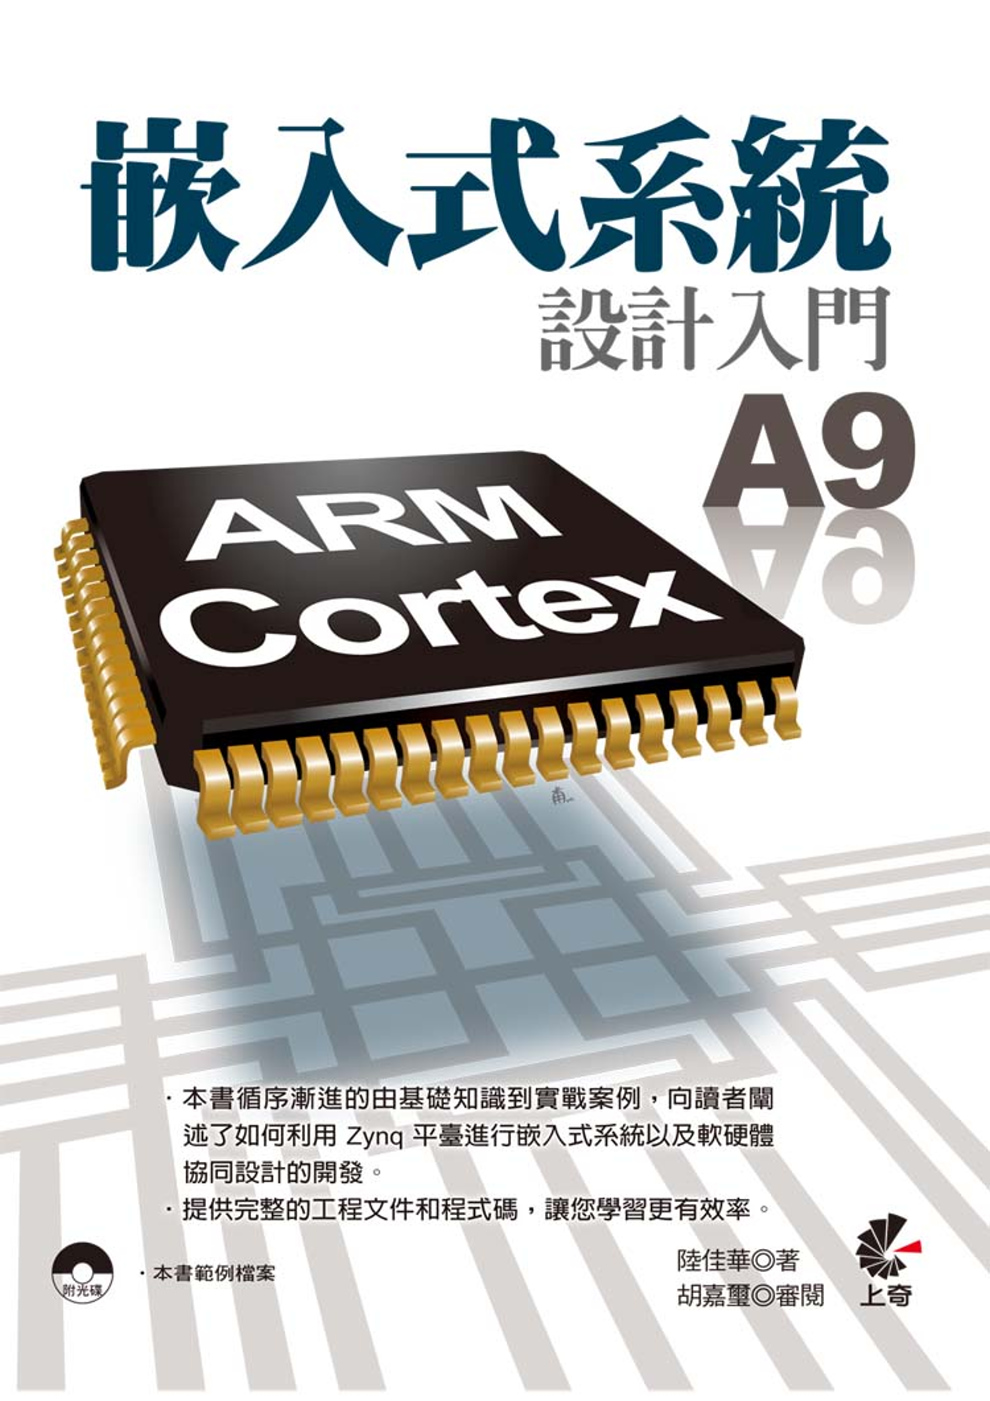 嵌入式系統設計入門 - ARM Cortex A9(附光碟)